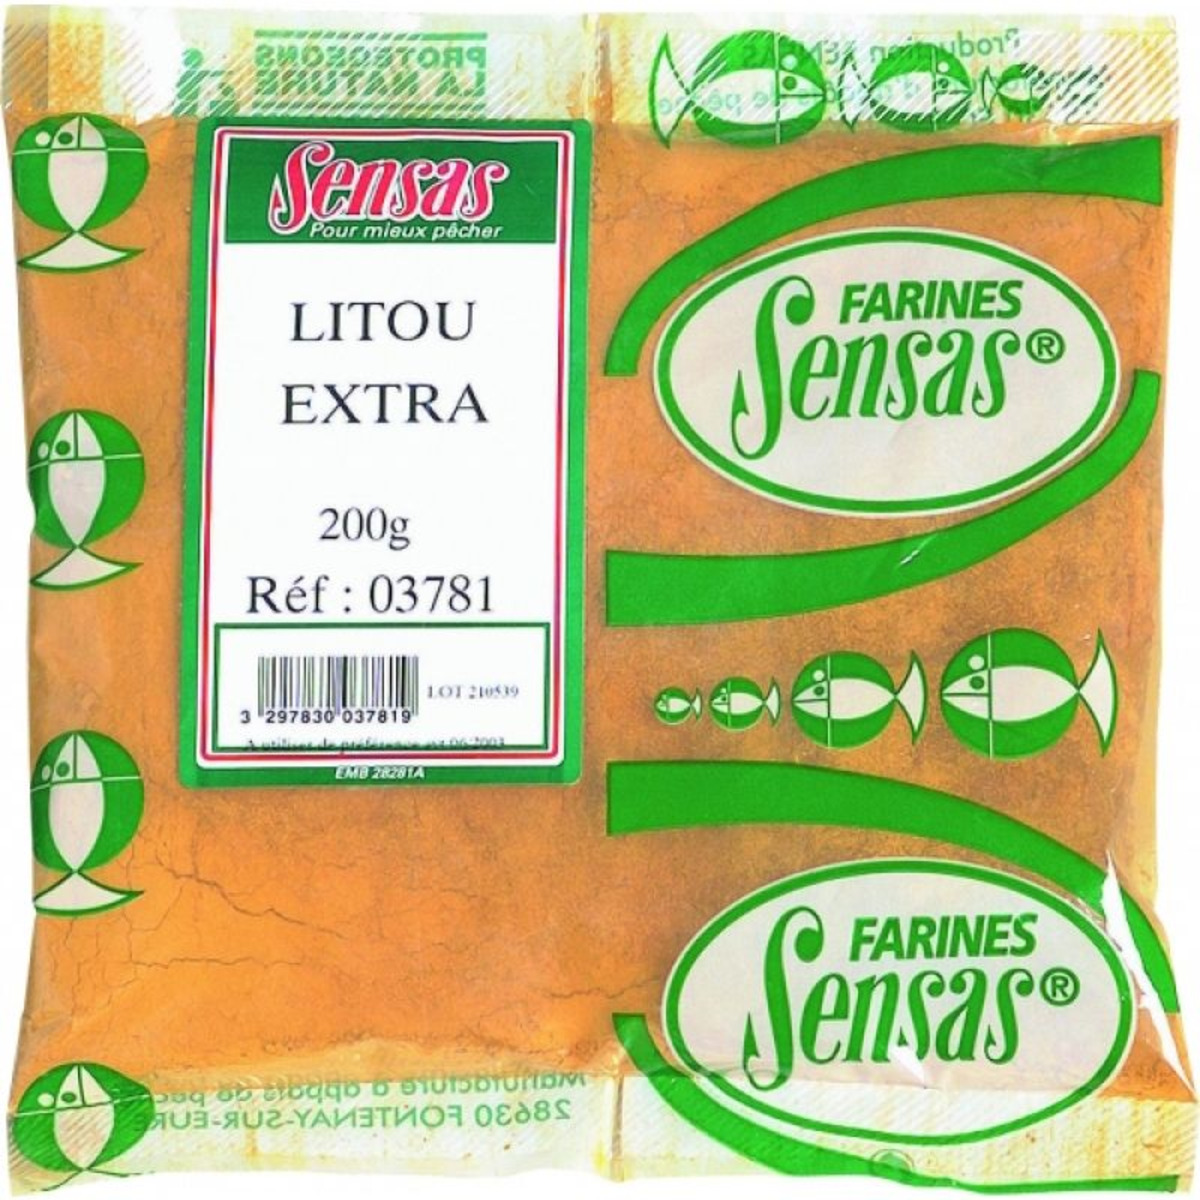 Sensas Litou Extra - 5 kg